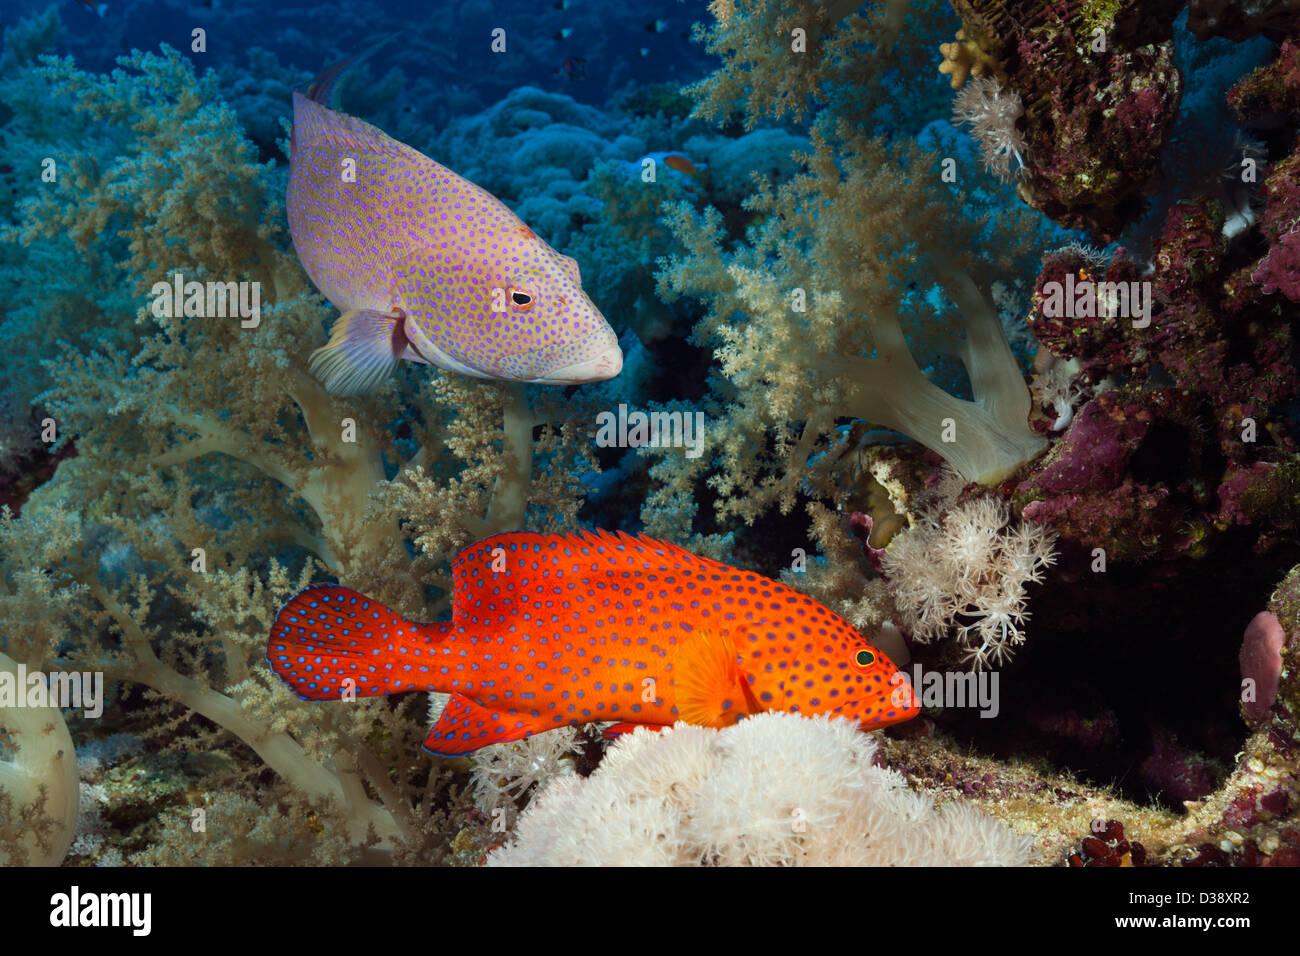 Coral Grouper and Lyretail Grouper, Cephalopholis miniata, Elphinstone, Red Sea, Egypt Stock Photo